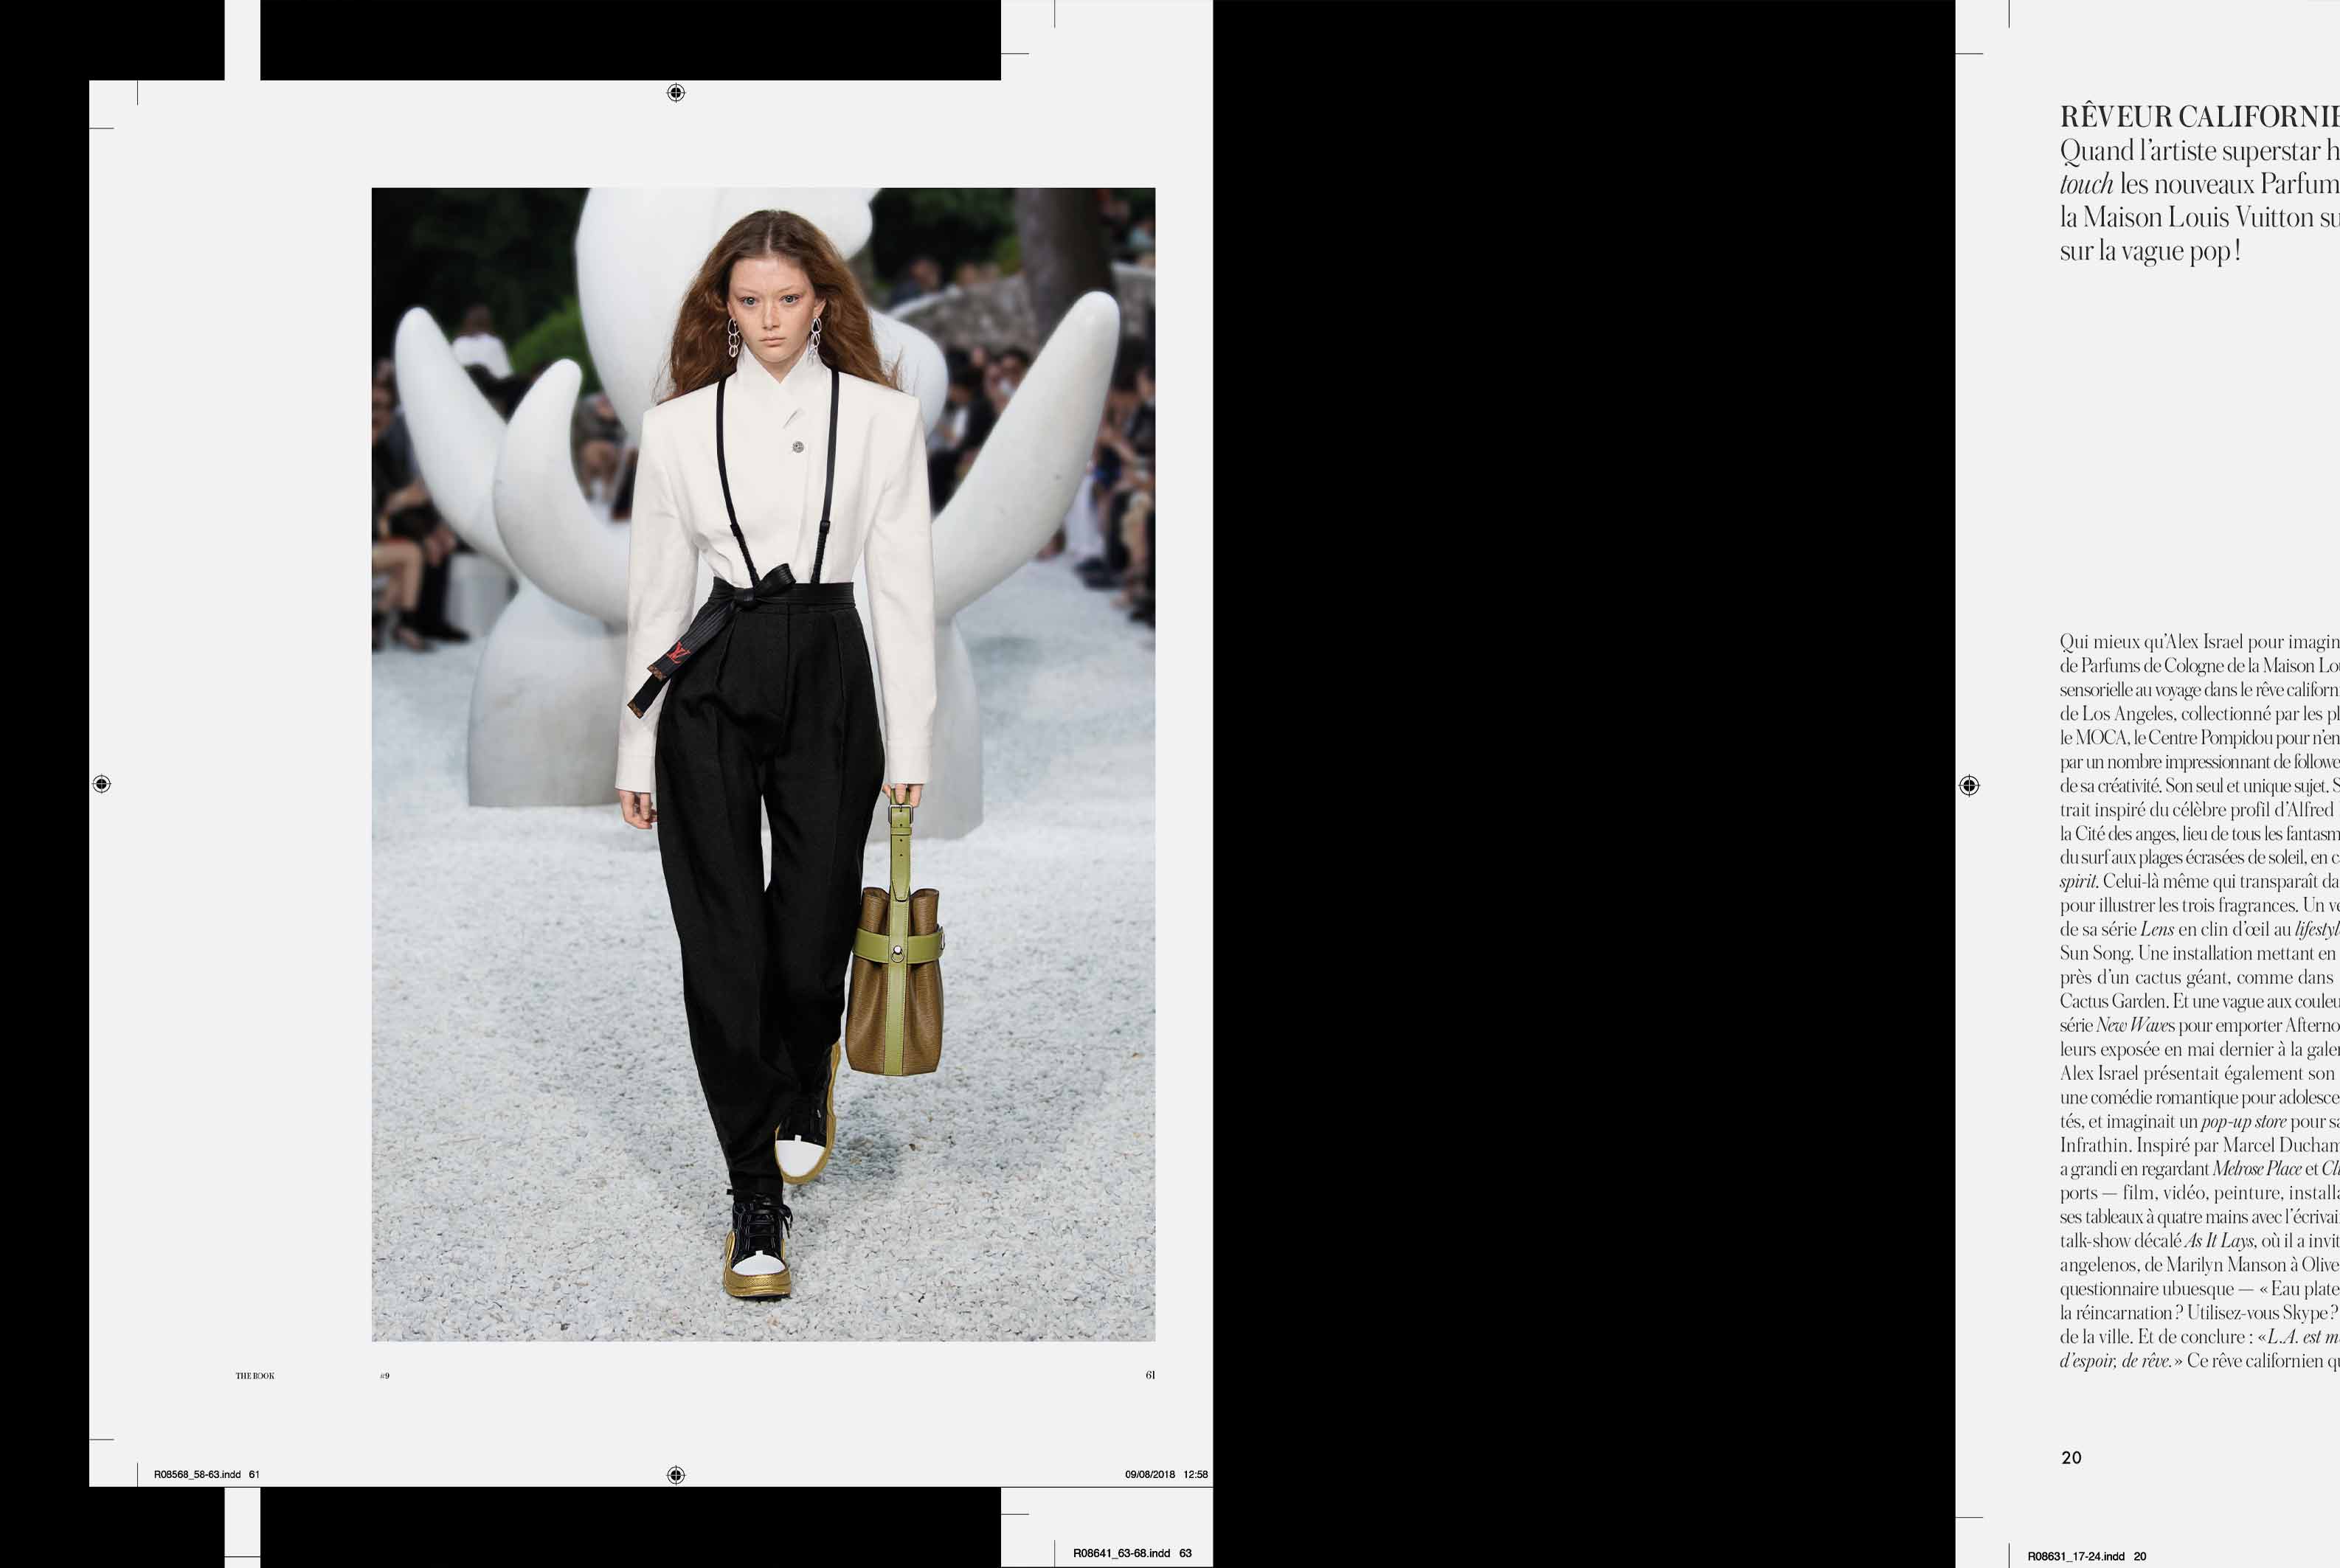 Pequeño libro de Louis Vuitton: Historia de la icónica casa de moda